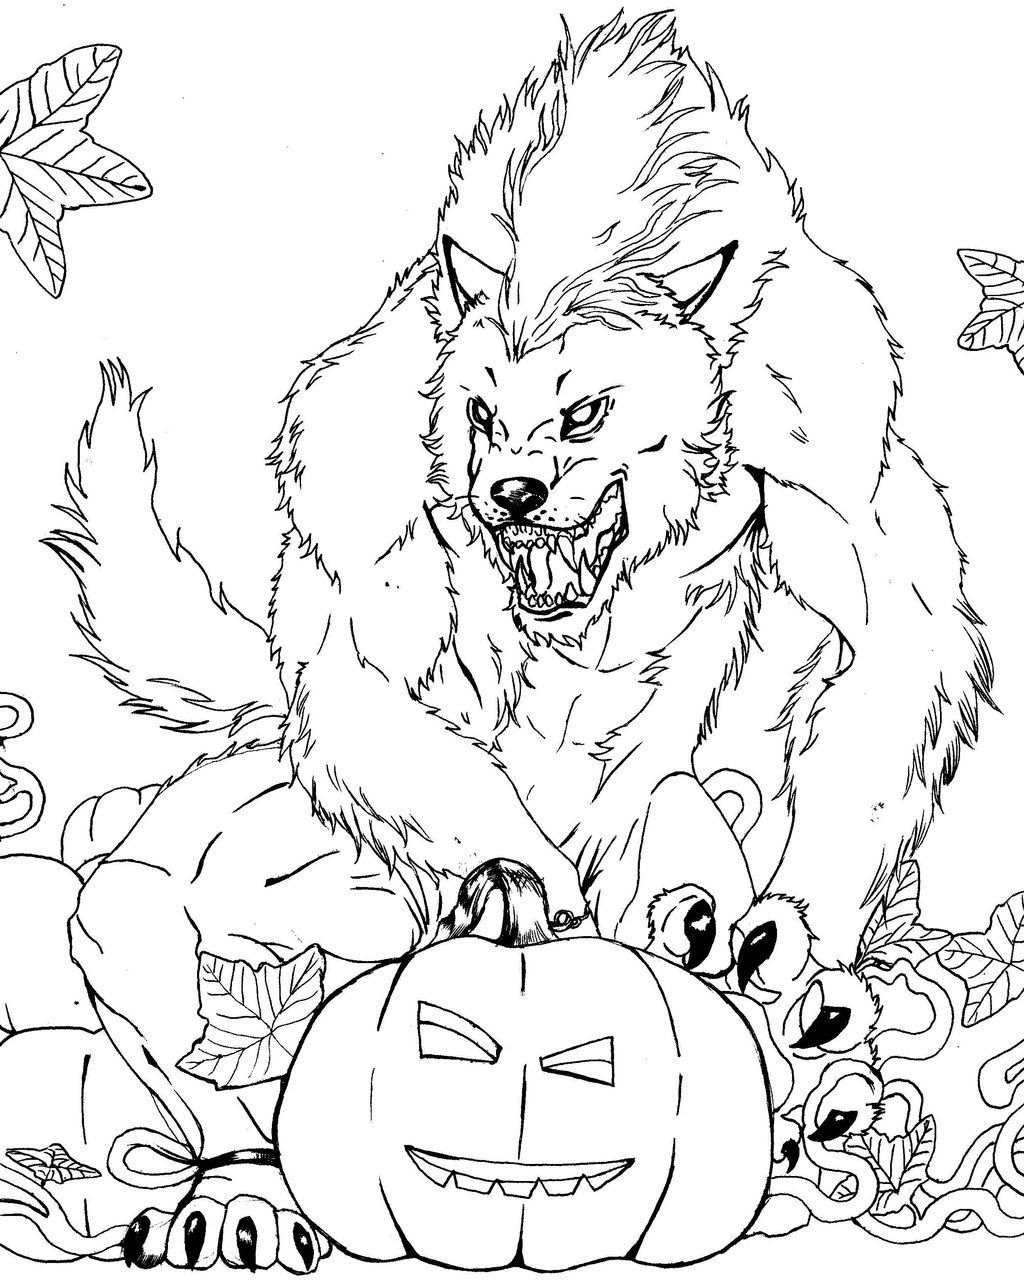 Página para colorear de miedo de hombre lobo de Halloween